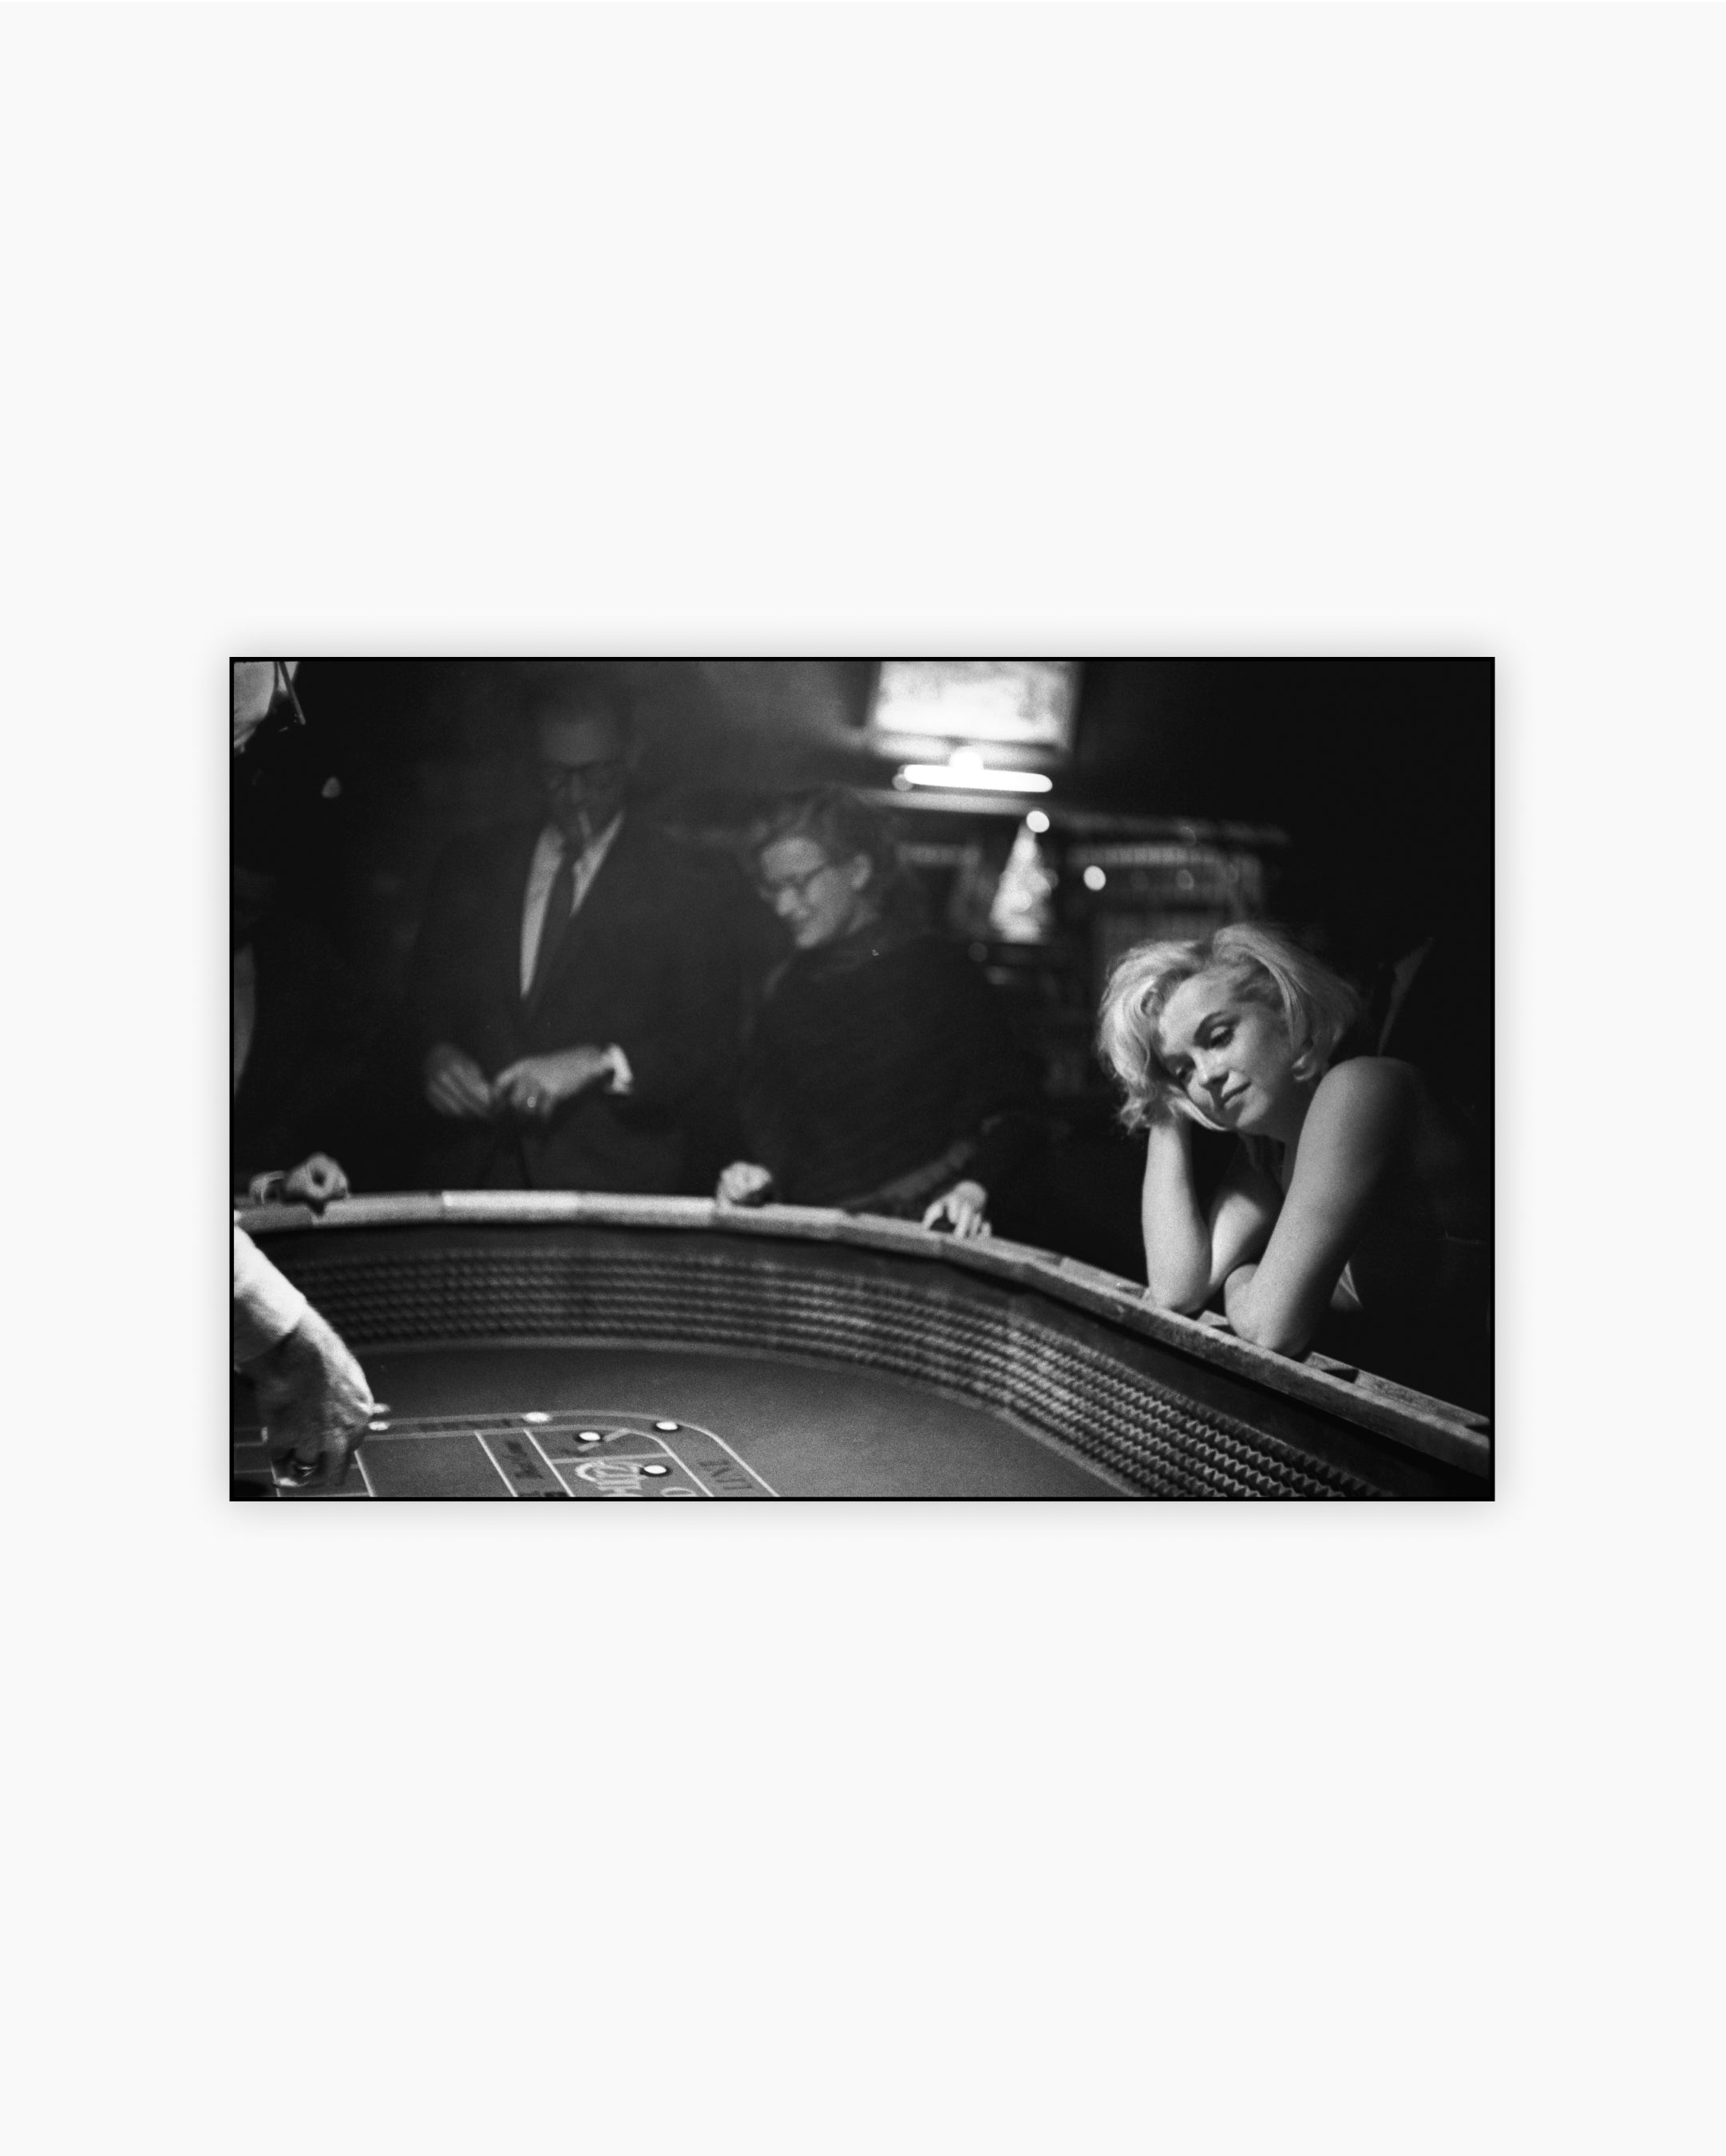 Marilyn Monroe at the gambling tables. Reno, Nevada, 1960